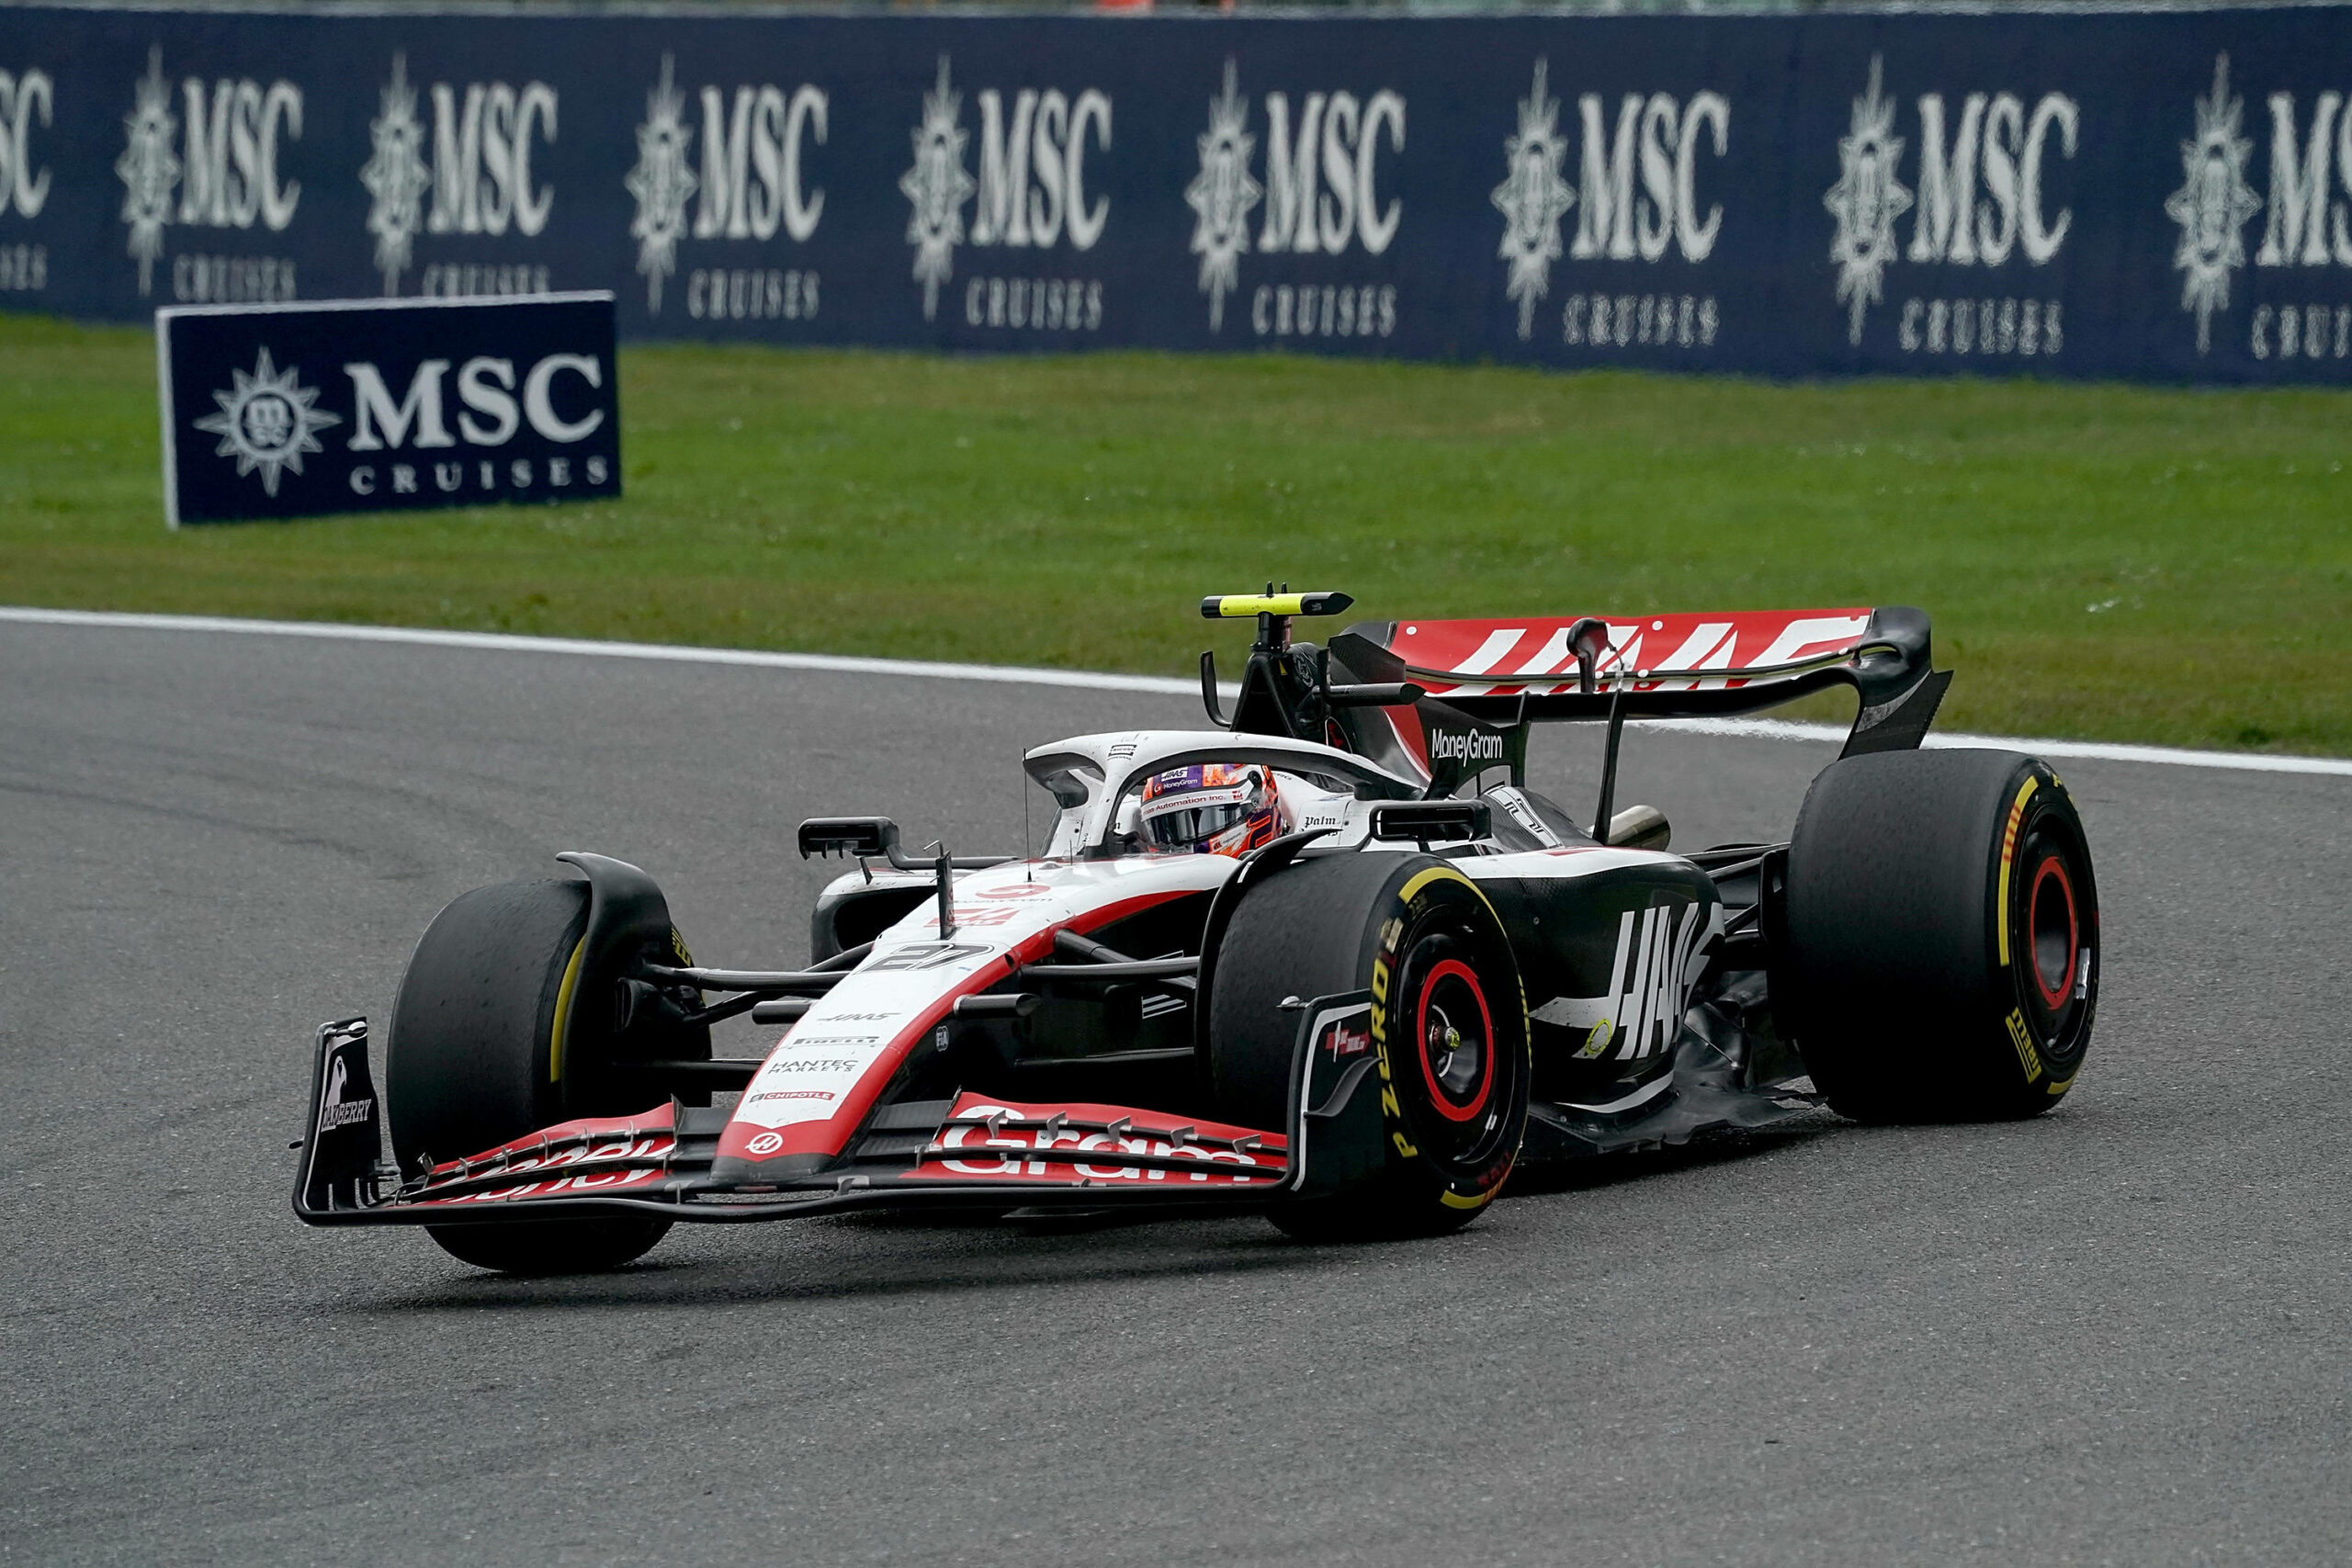 Der deustche Formel-1-Pilot Nico Hülkenberg bei Rennen in Belgien